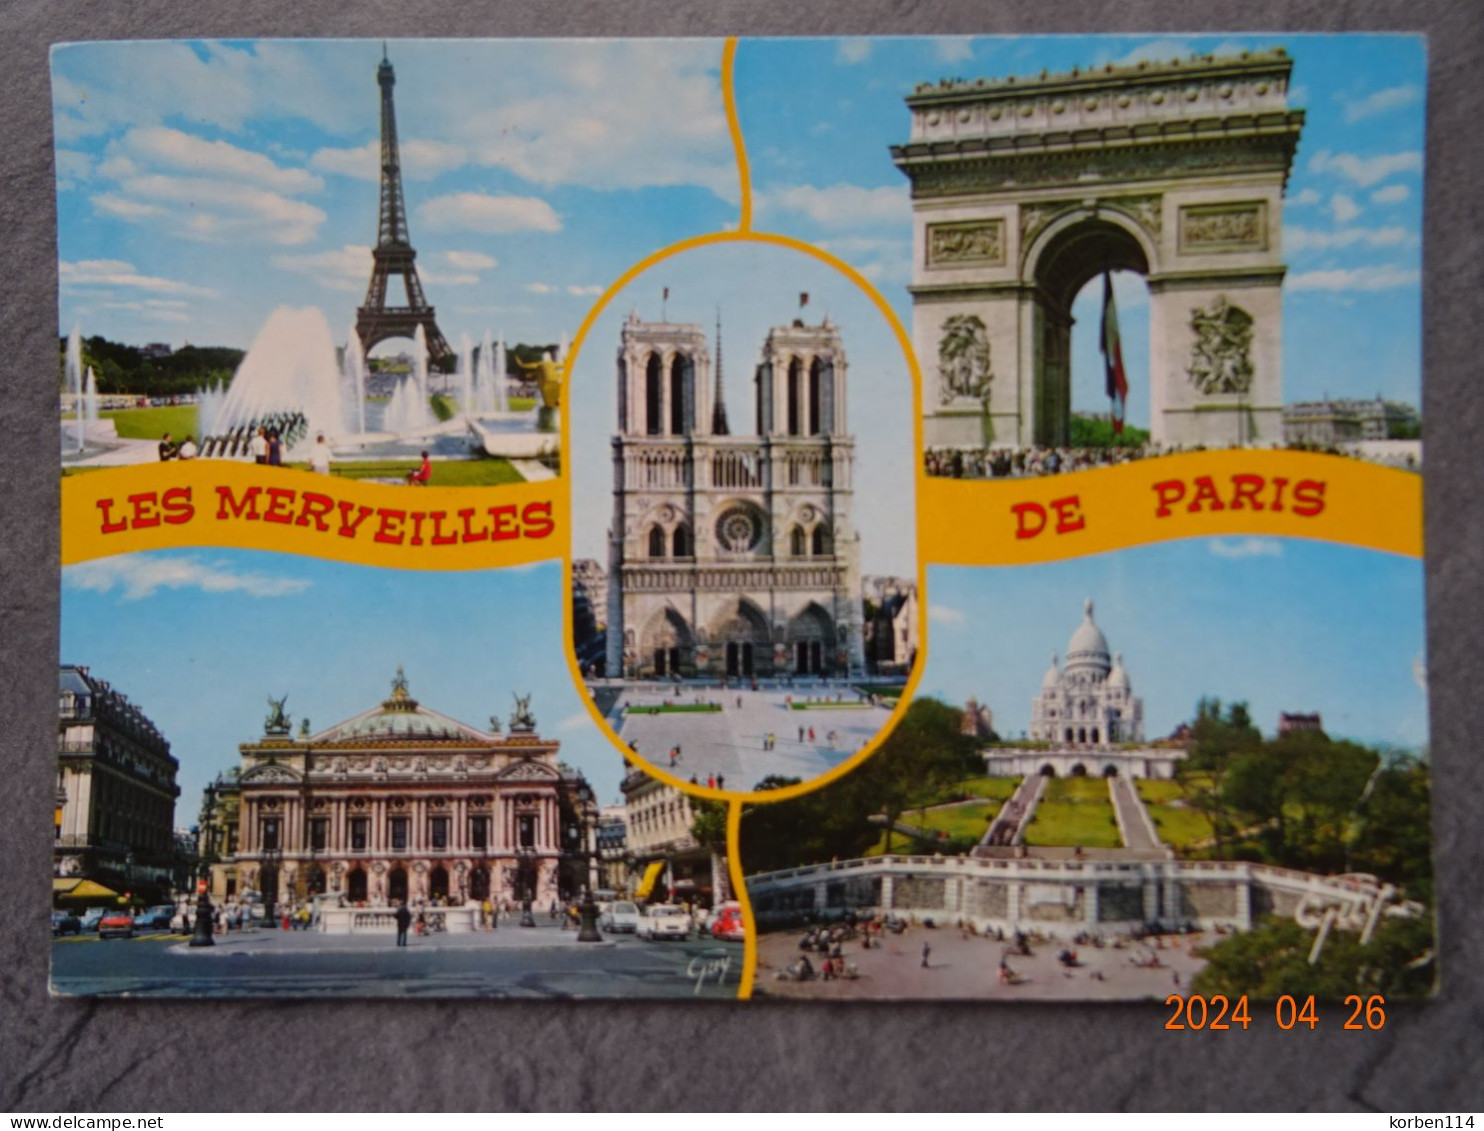 LES MERVEILLES DE PARIS - Sonstige Sehenswürdigkeiten